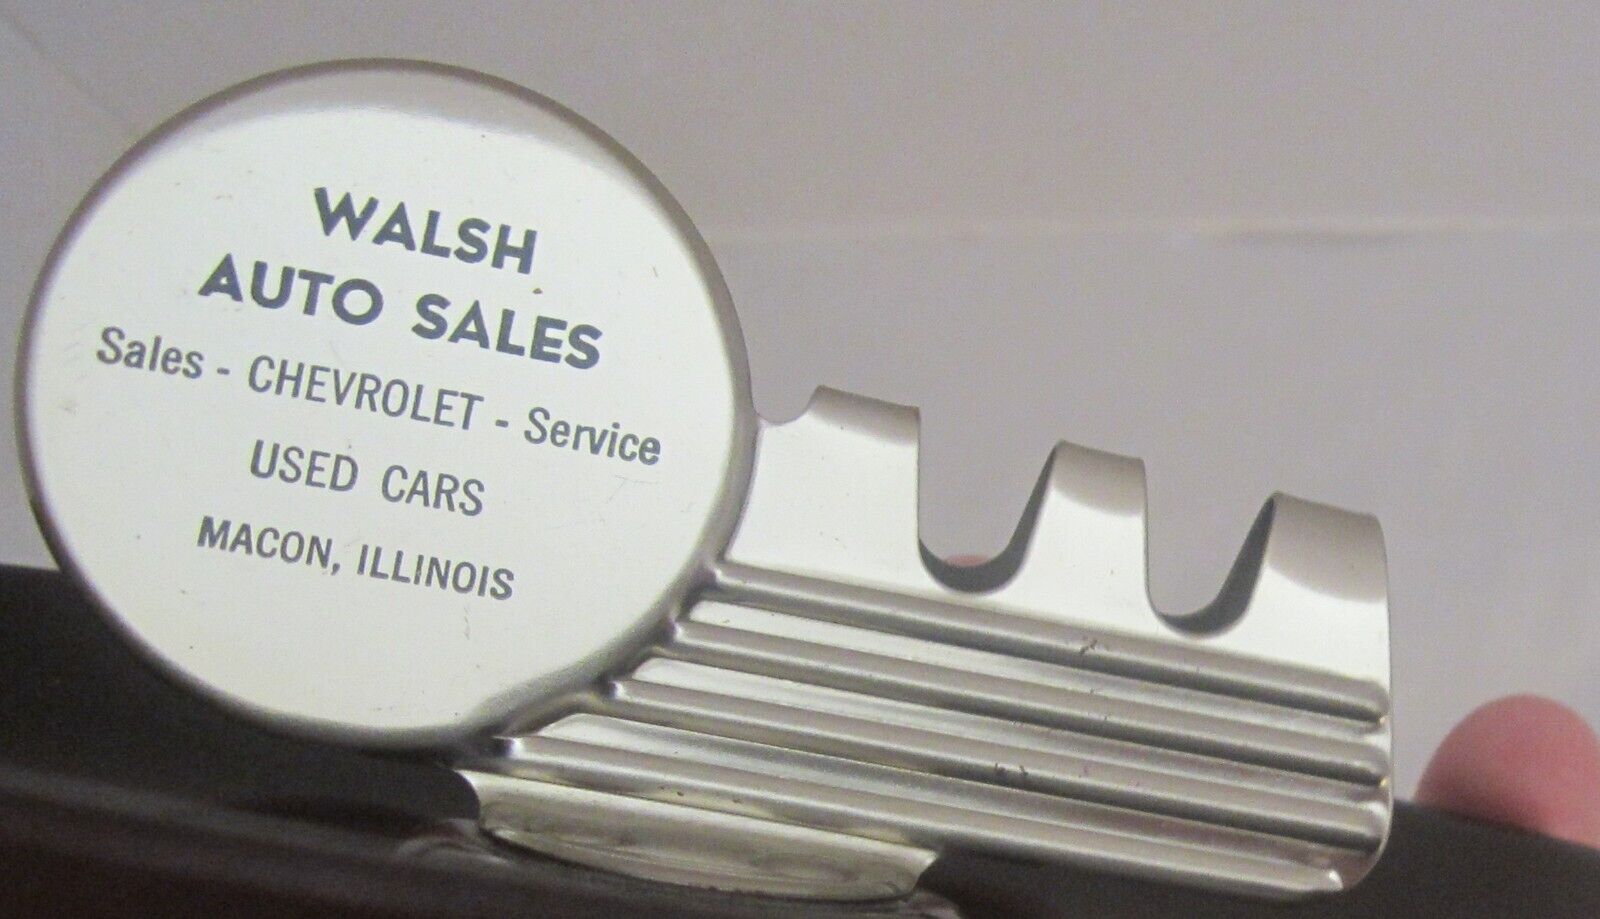 Chevrolet Macon Illinois Walsh Auto Sales  Ashtray Sales Service Used Cars